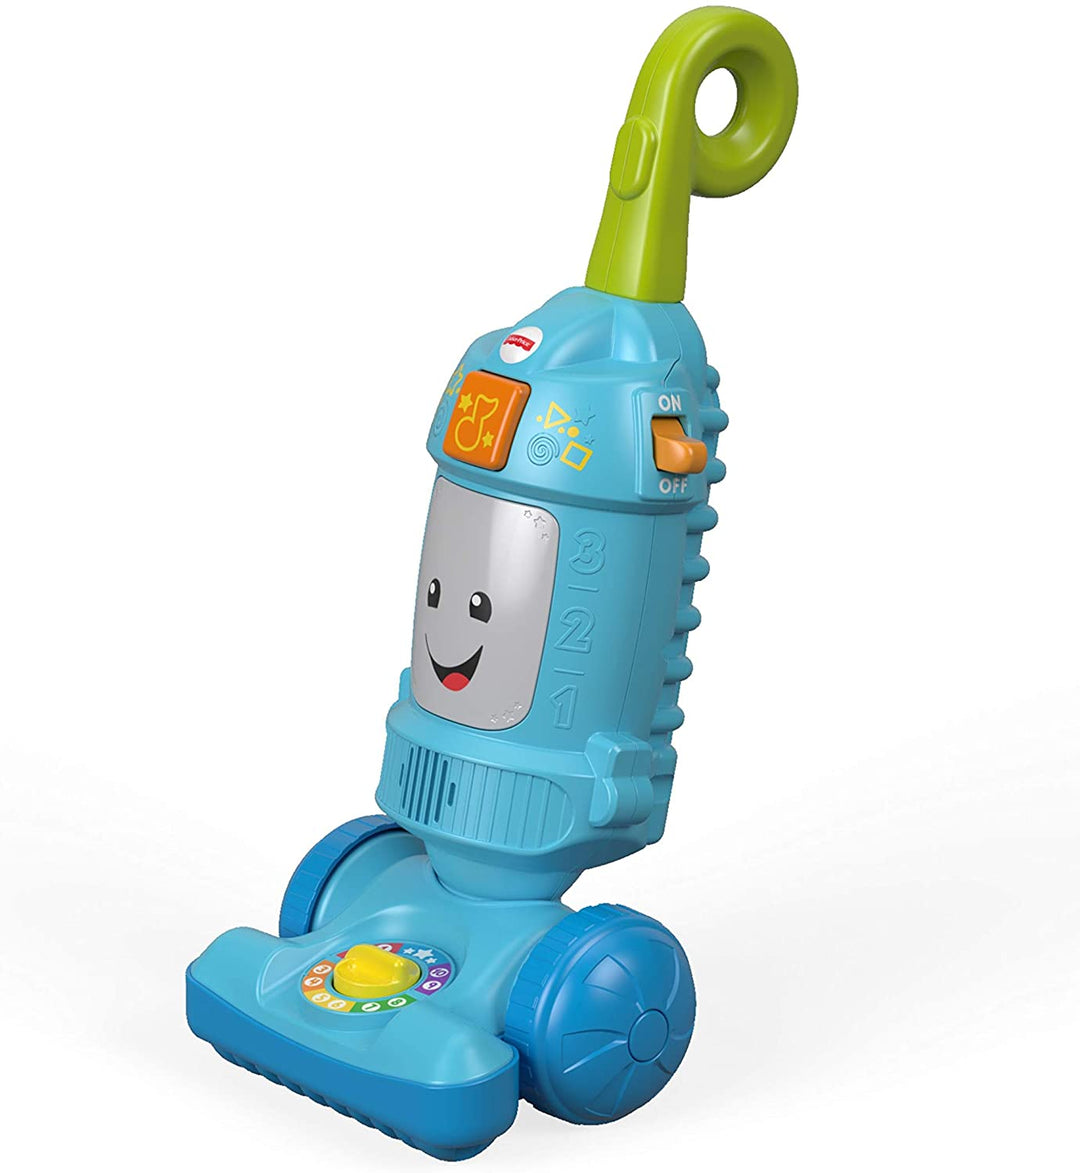 Fisher-Price FNR97 Laugh Light-up Learning Vacuum, Schiebespielzeug für Babys und Kleinkinder